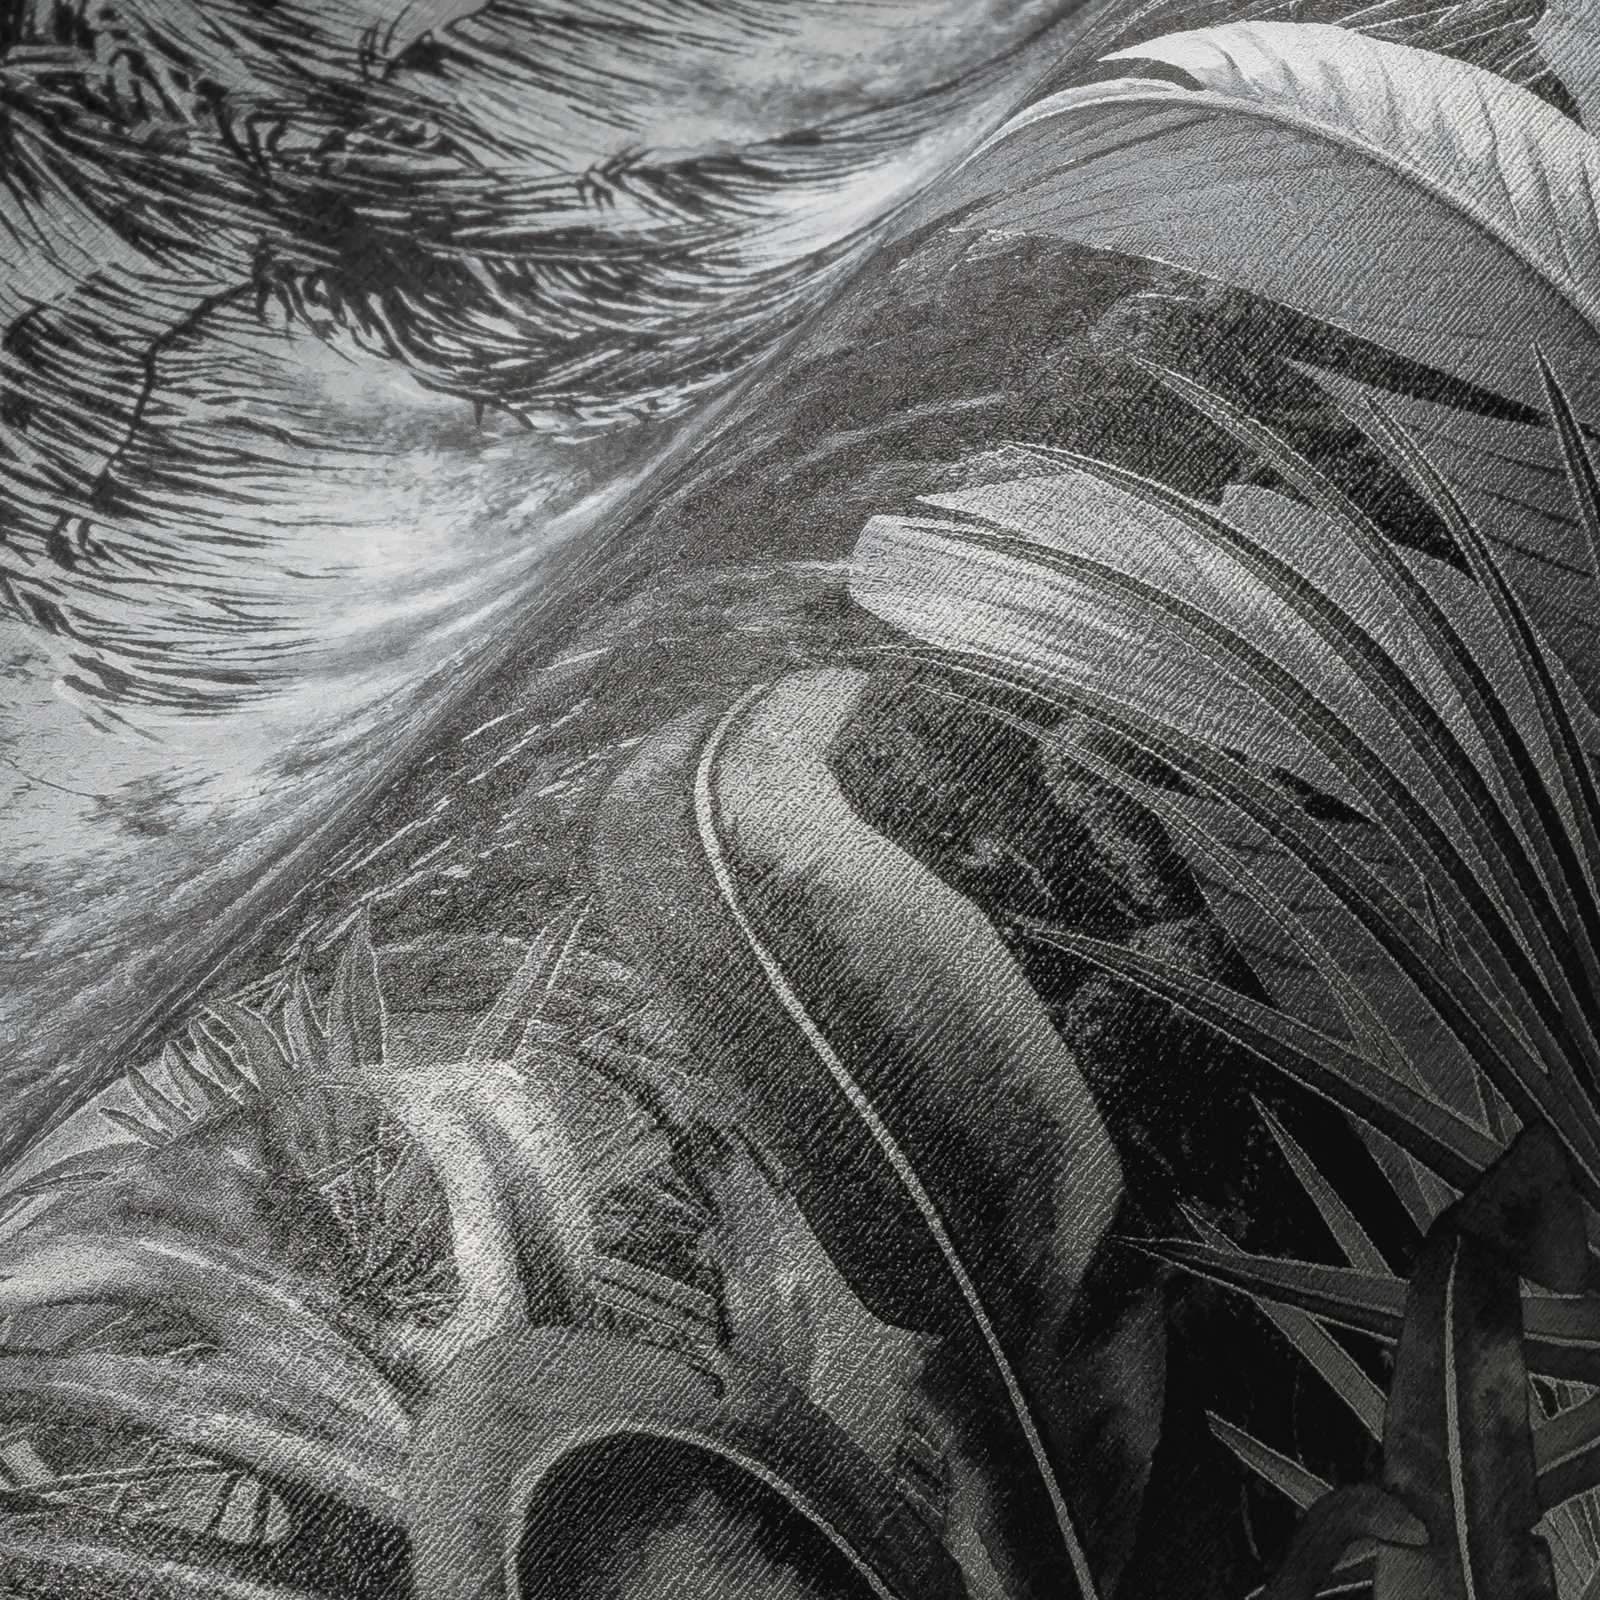             Schwarz-Weiß Tapete Dschungel Muster mit Palmen
        